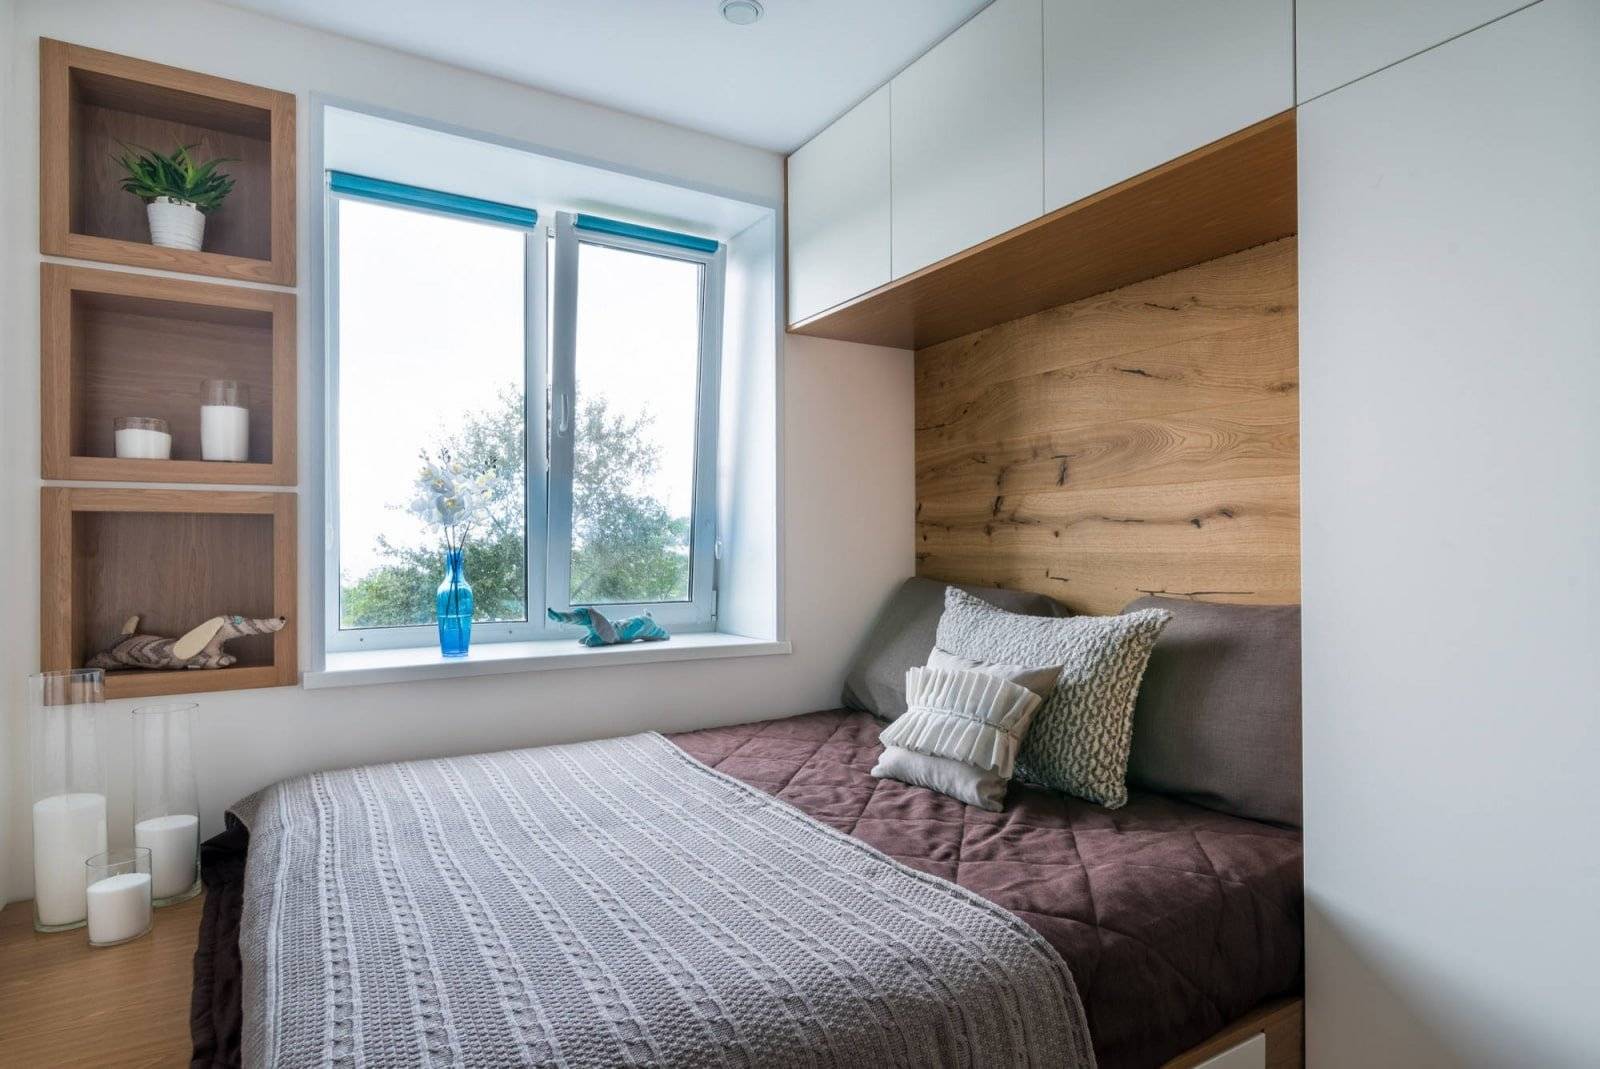 70 идей дизайна спальни в хрущевке (фото)